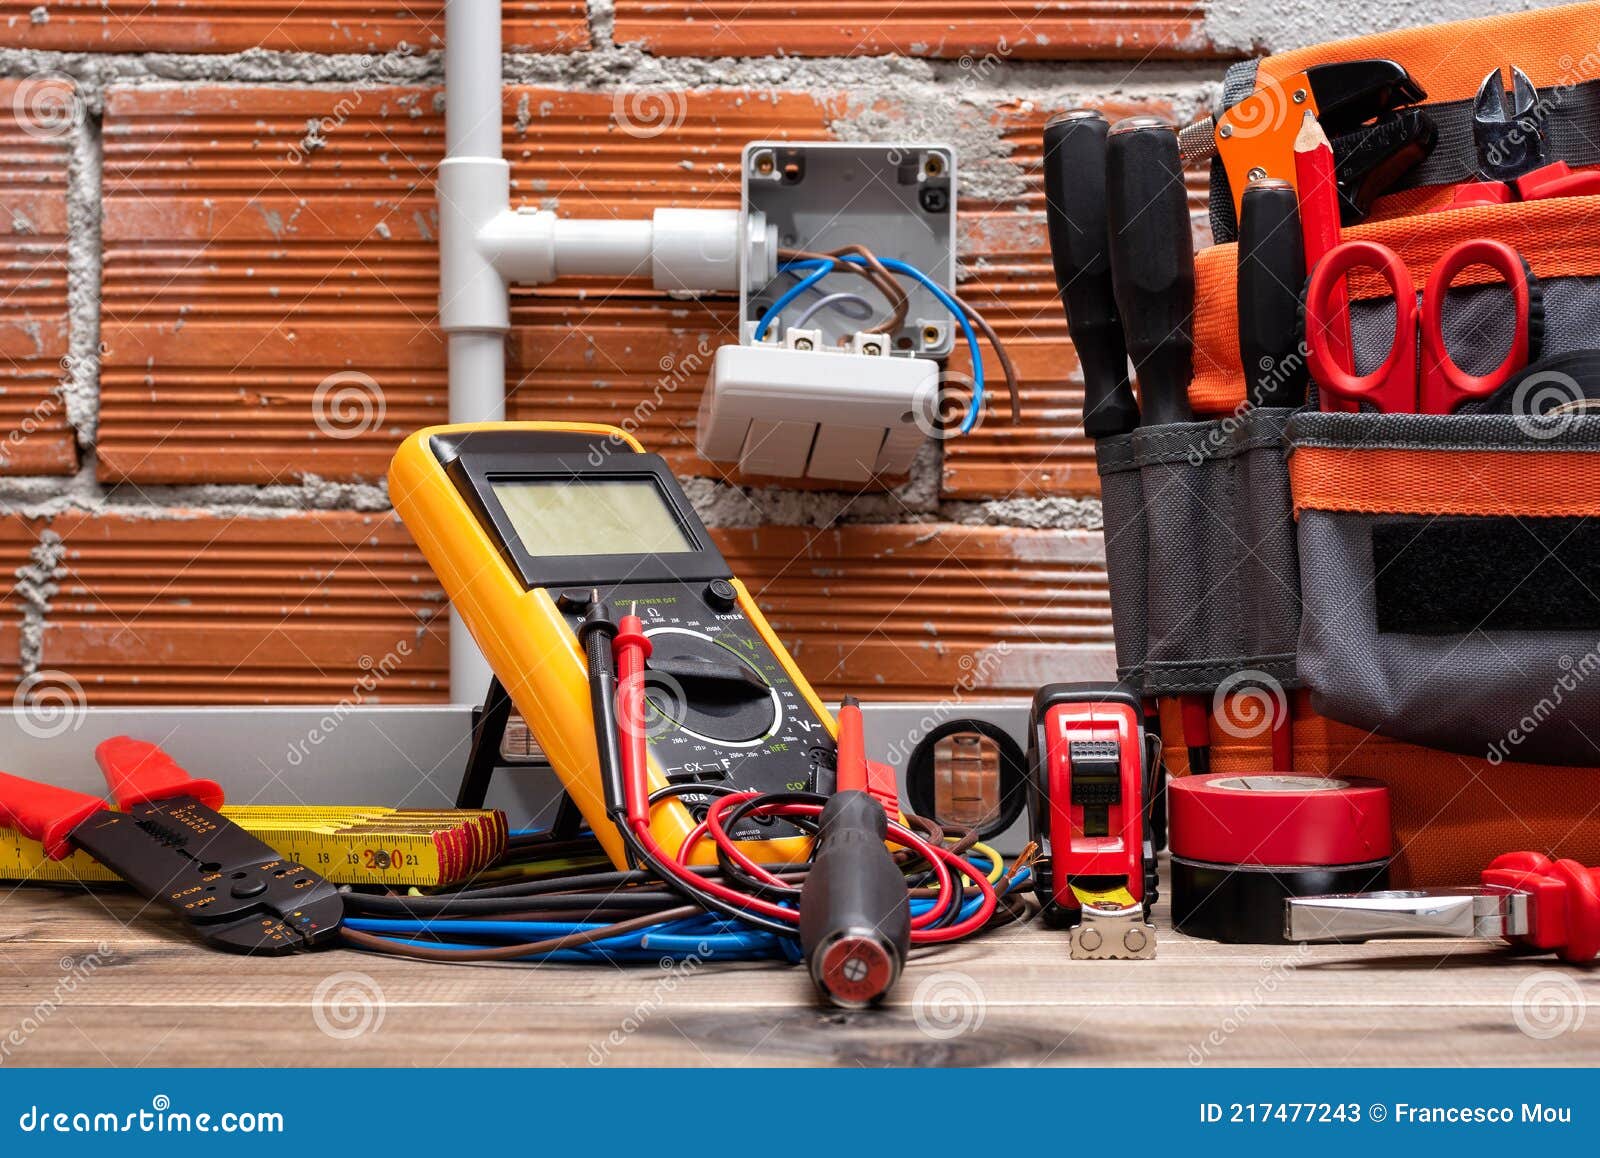 Outils Et équipements De Travail Pour électriciens. électricité Image stock  - Image du matériel, réparation: 217477243